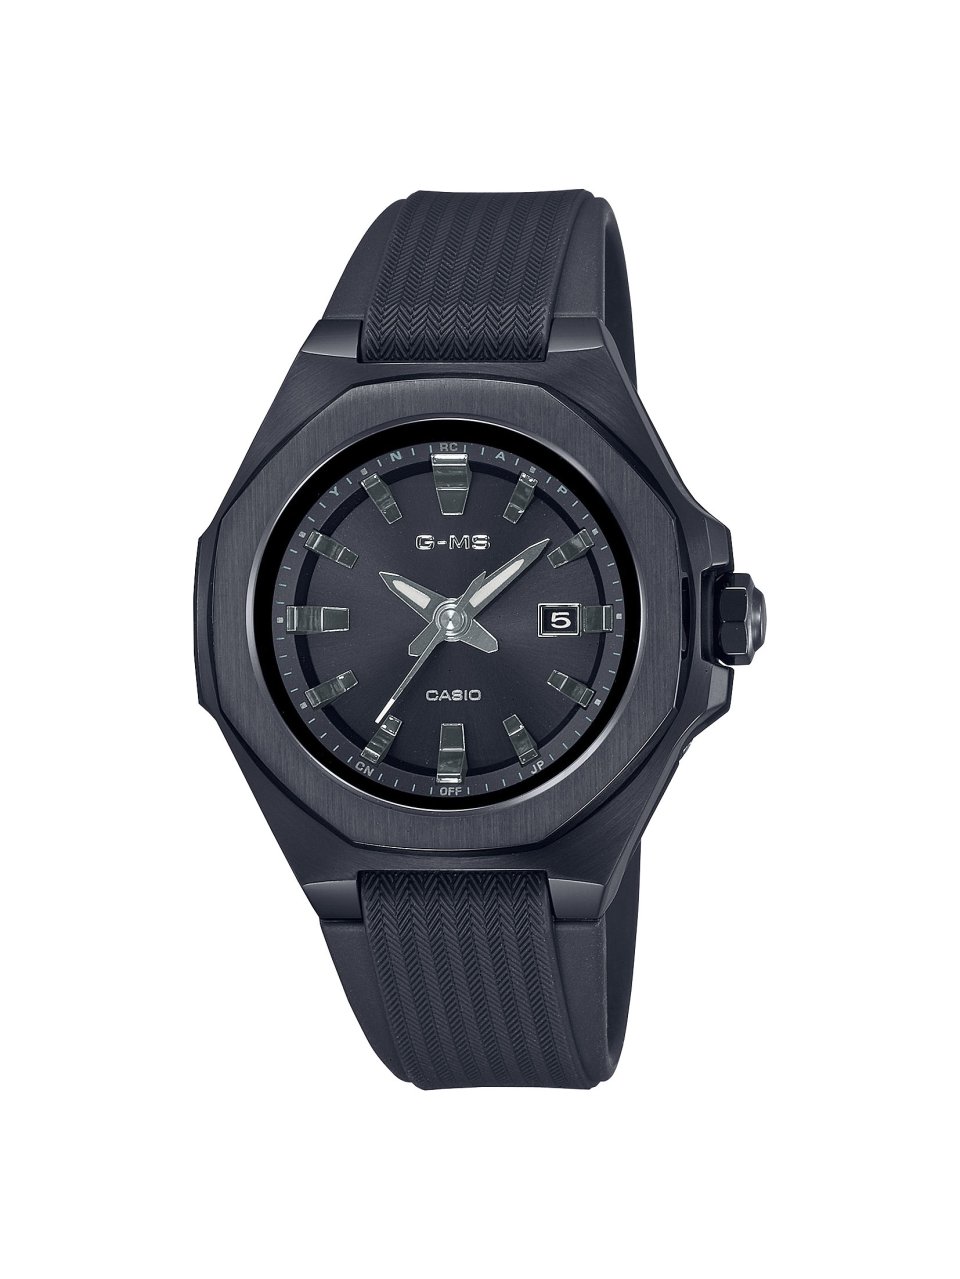 BABY-Gの腕時計“G-MS（ジーミズ）”から オールブラックの新作モデルが